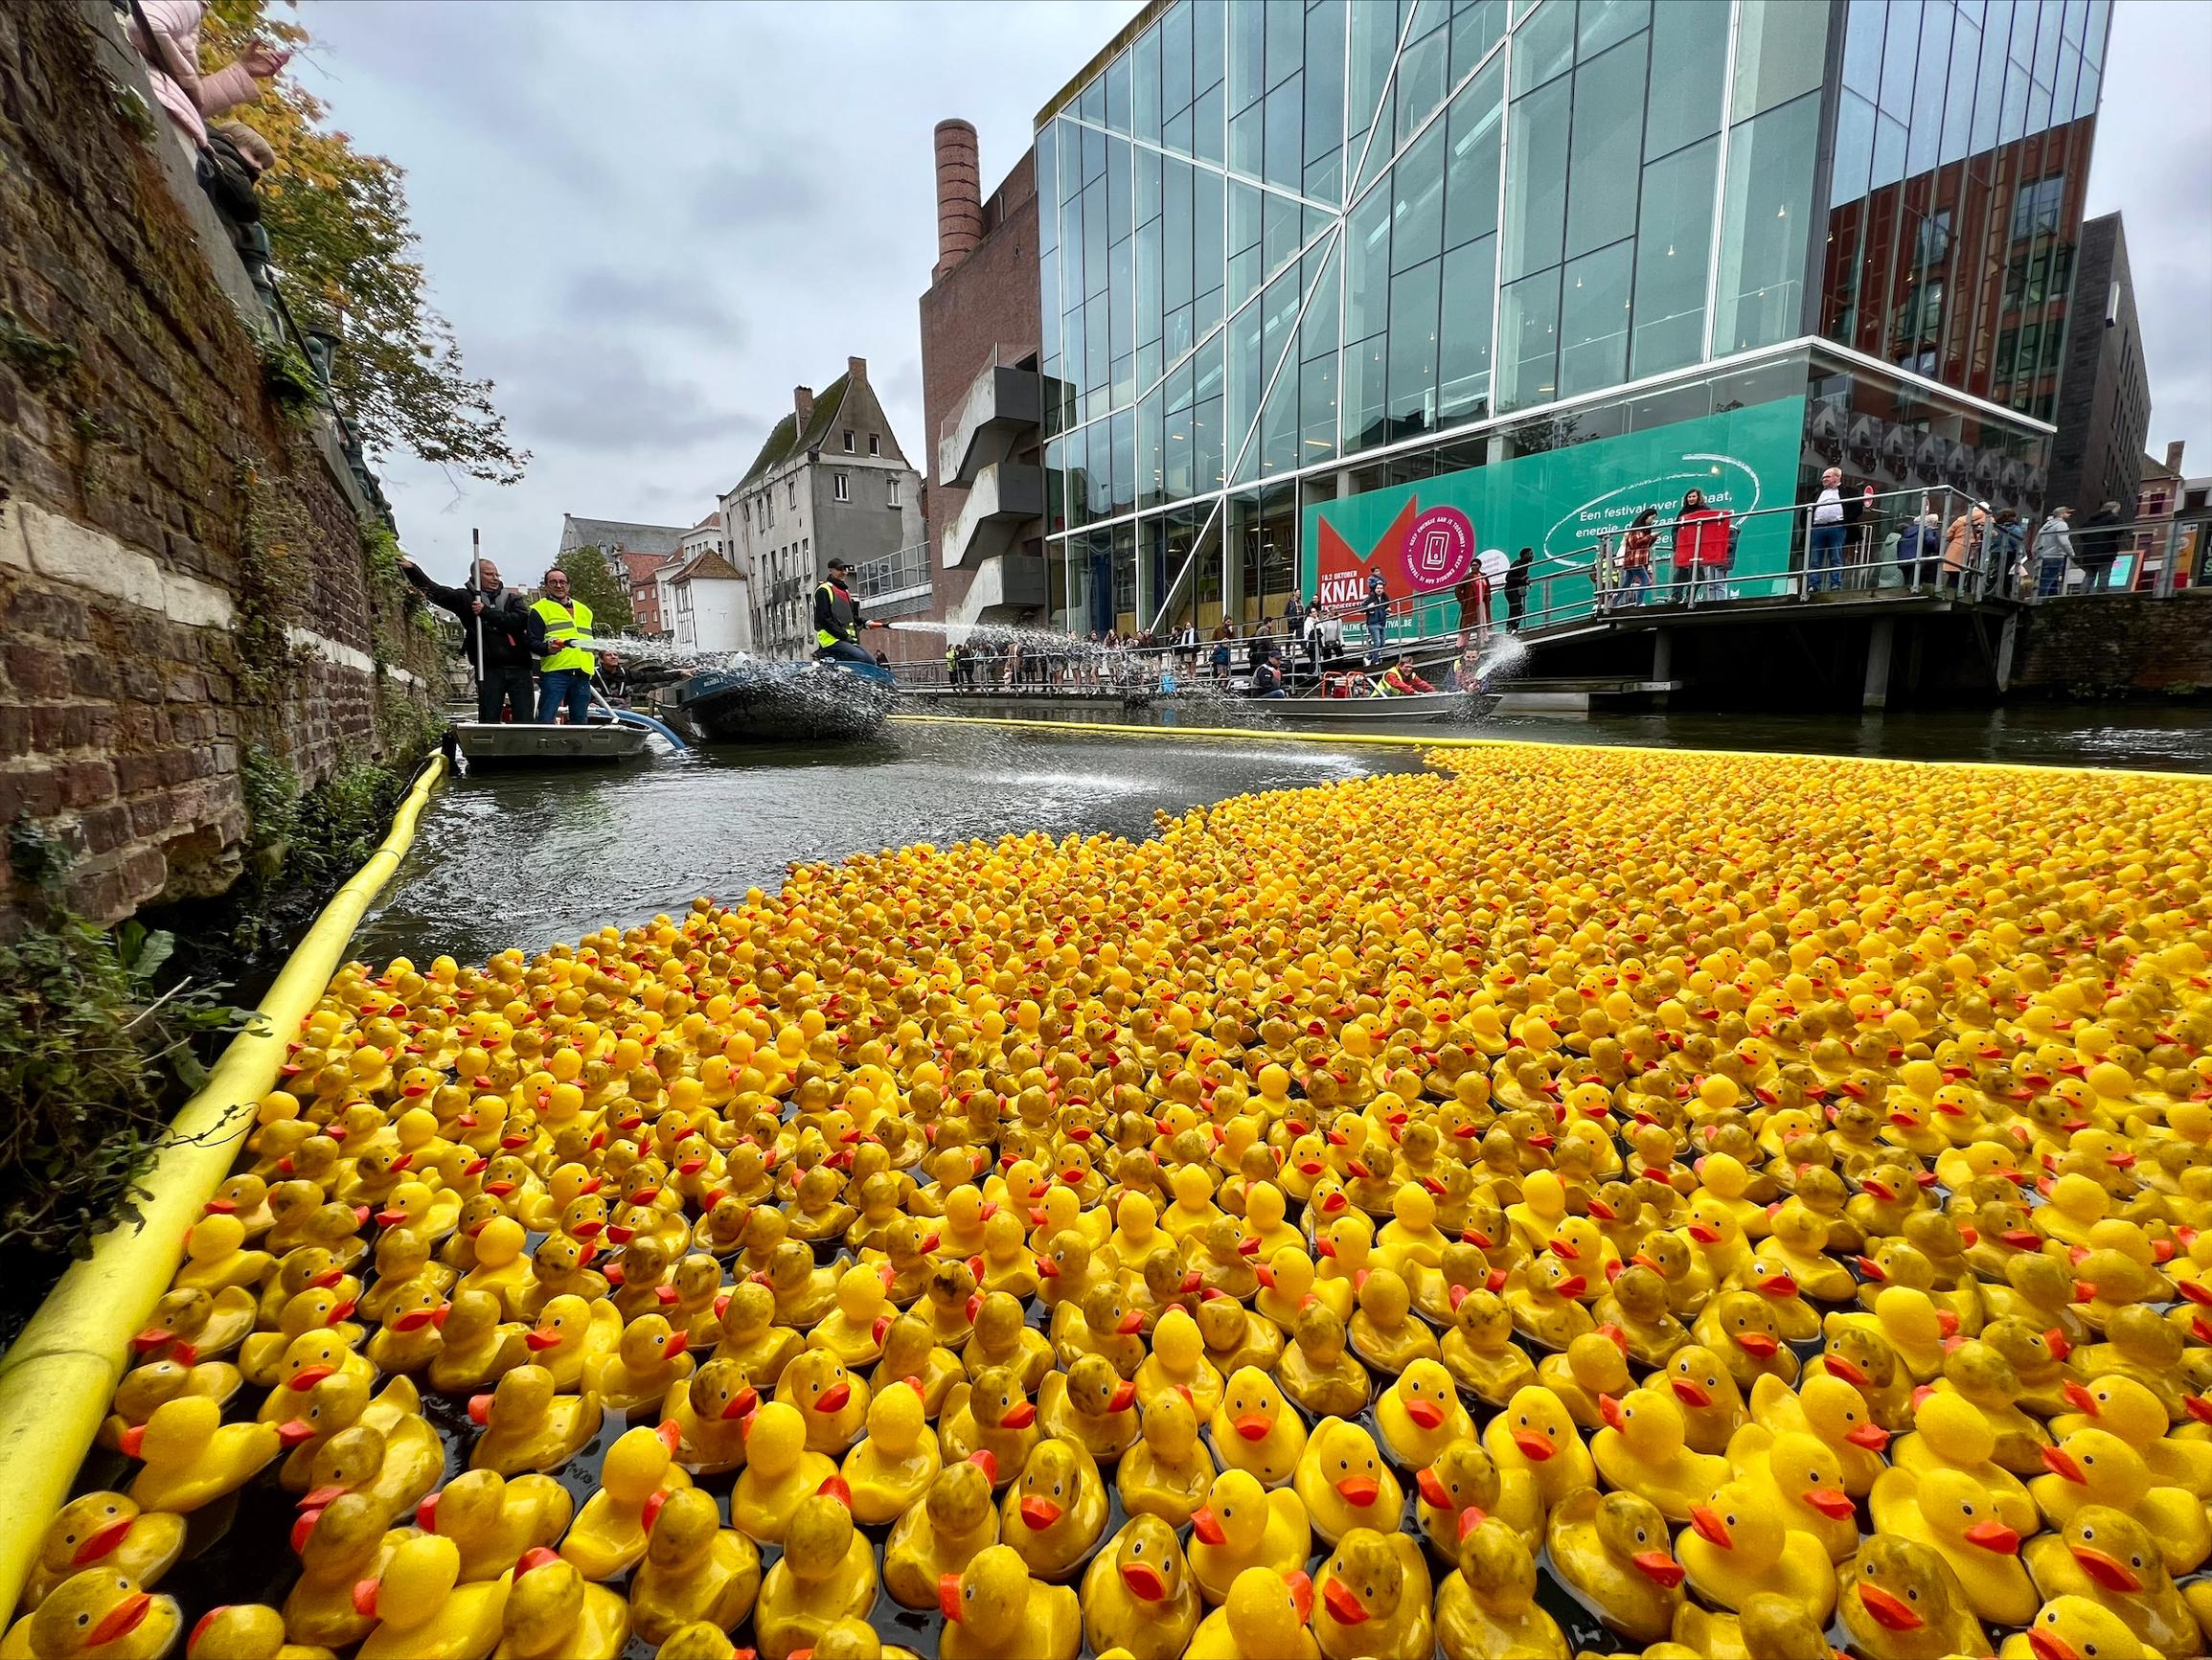 met 2.300 badeendjes op Mechelse Dijle levert 6.000 euro op voor goede doelen (Mechelen) | Gazet van Antwerpen Mobile